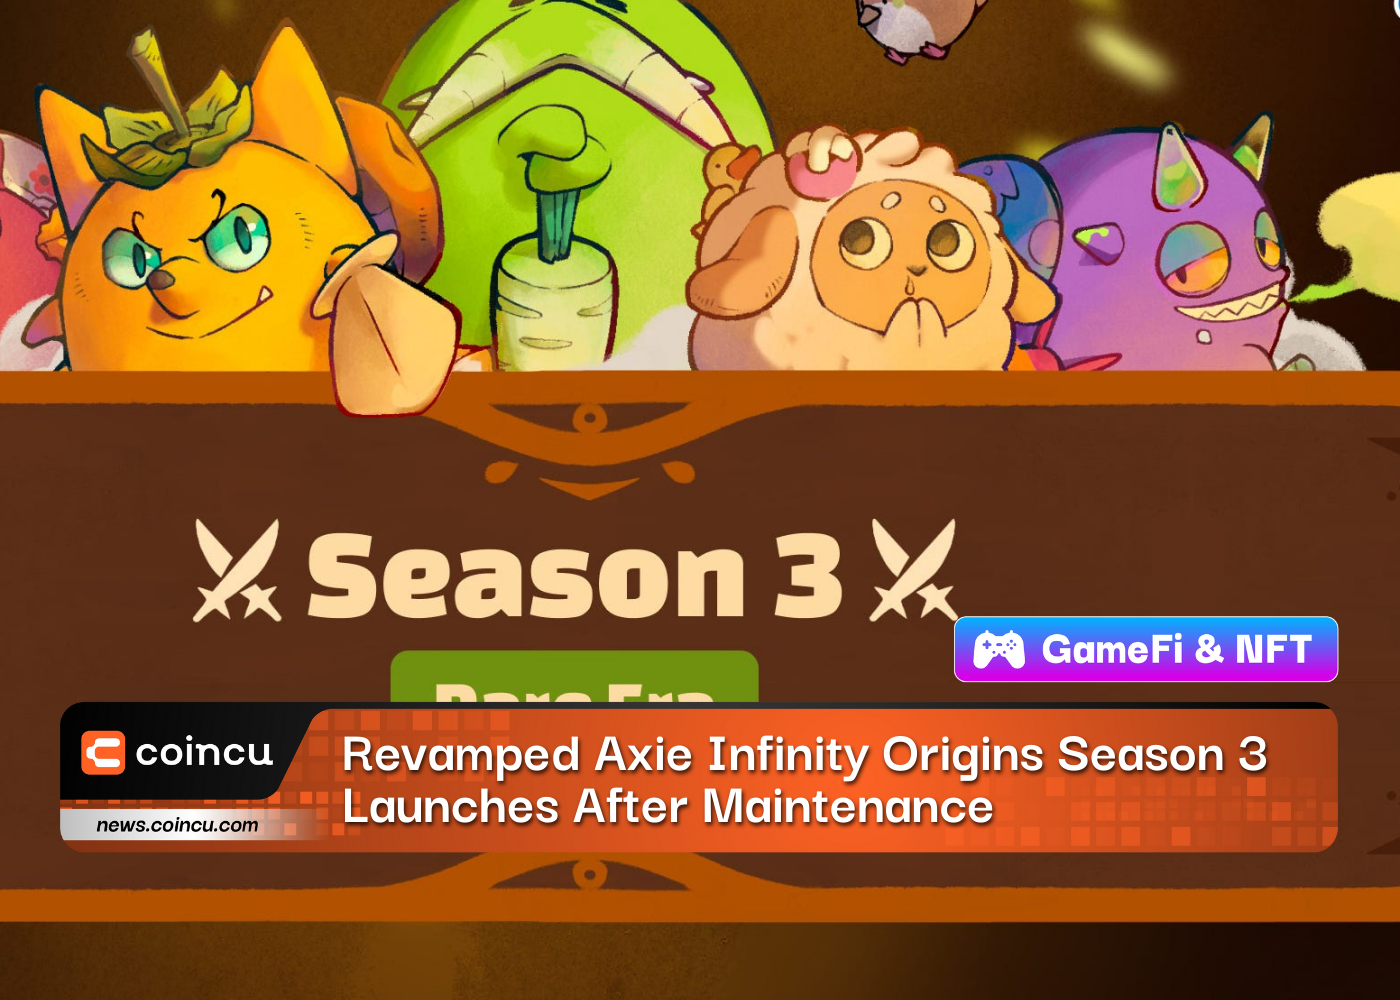 Revamped Axie Infinity Origins Season 3